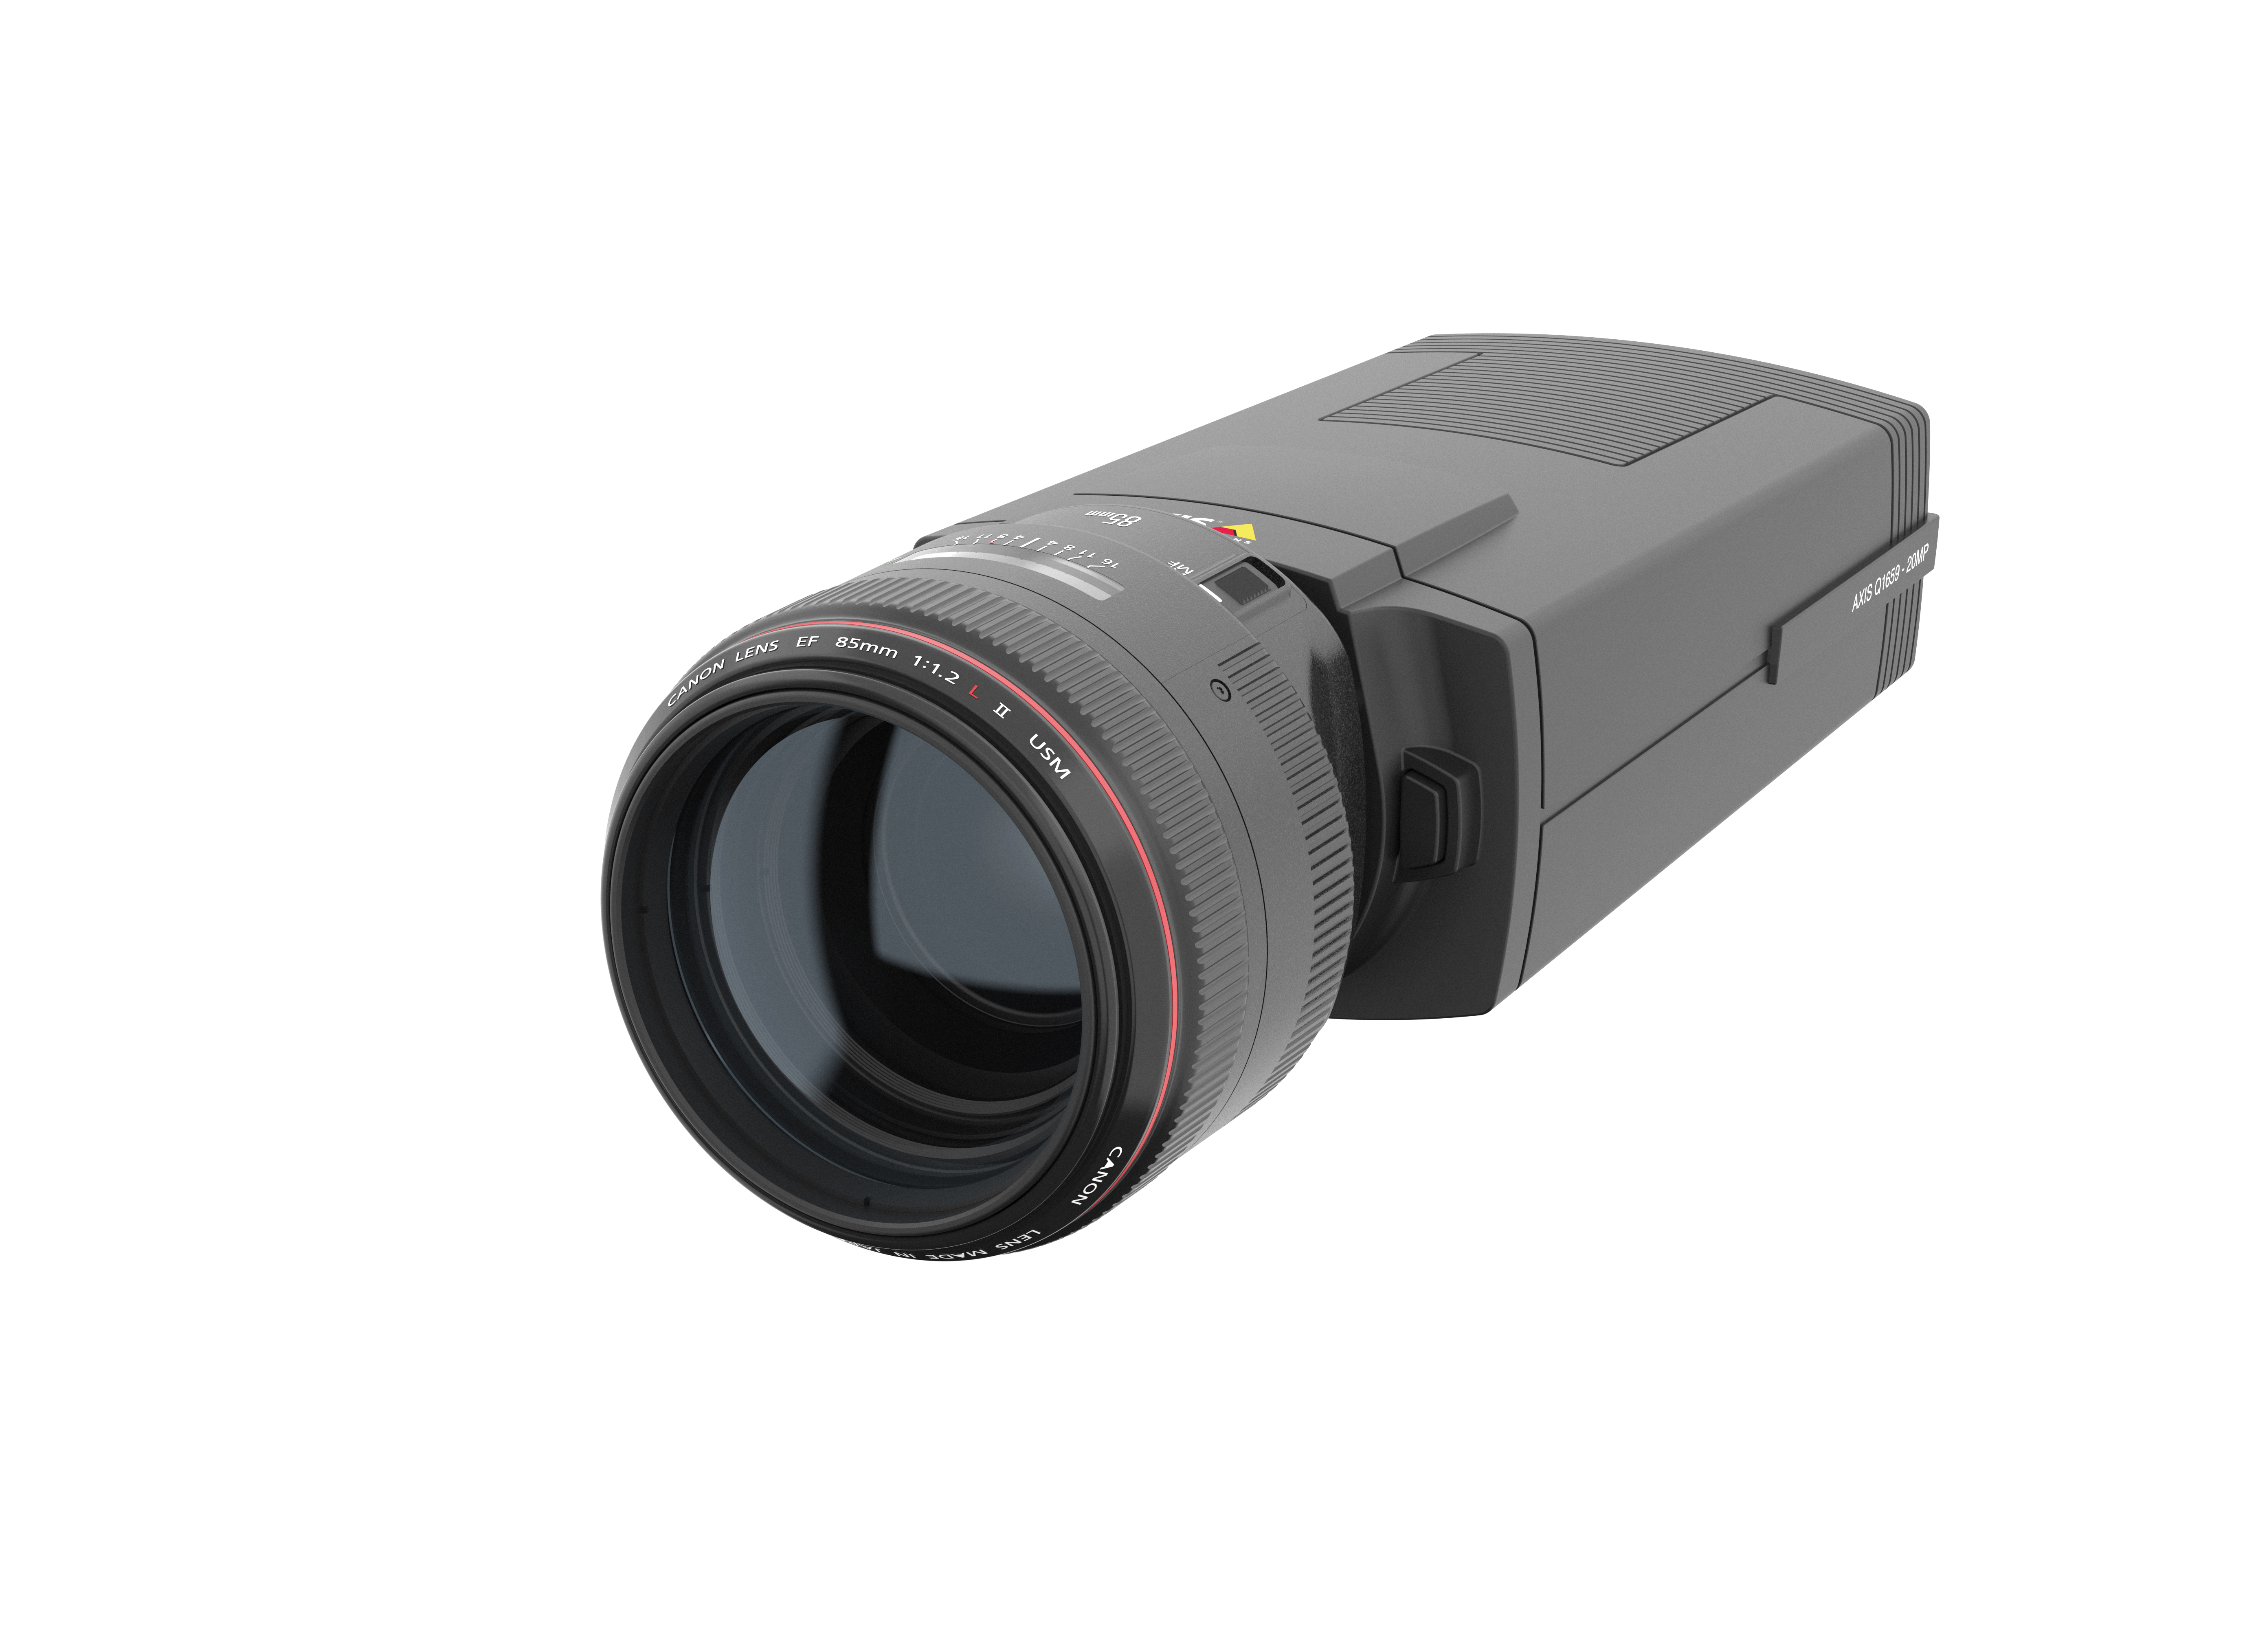 キヤノンのイメージング技術とアクシス社のネットワーク技術を融合したレンズ交換式ネットワークカメラ Axis Q1659 キヤノン 株式会社のプレスリリース